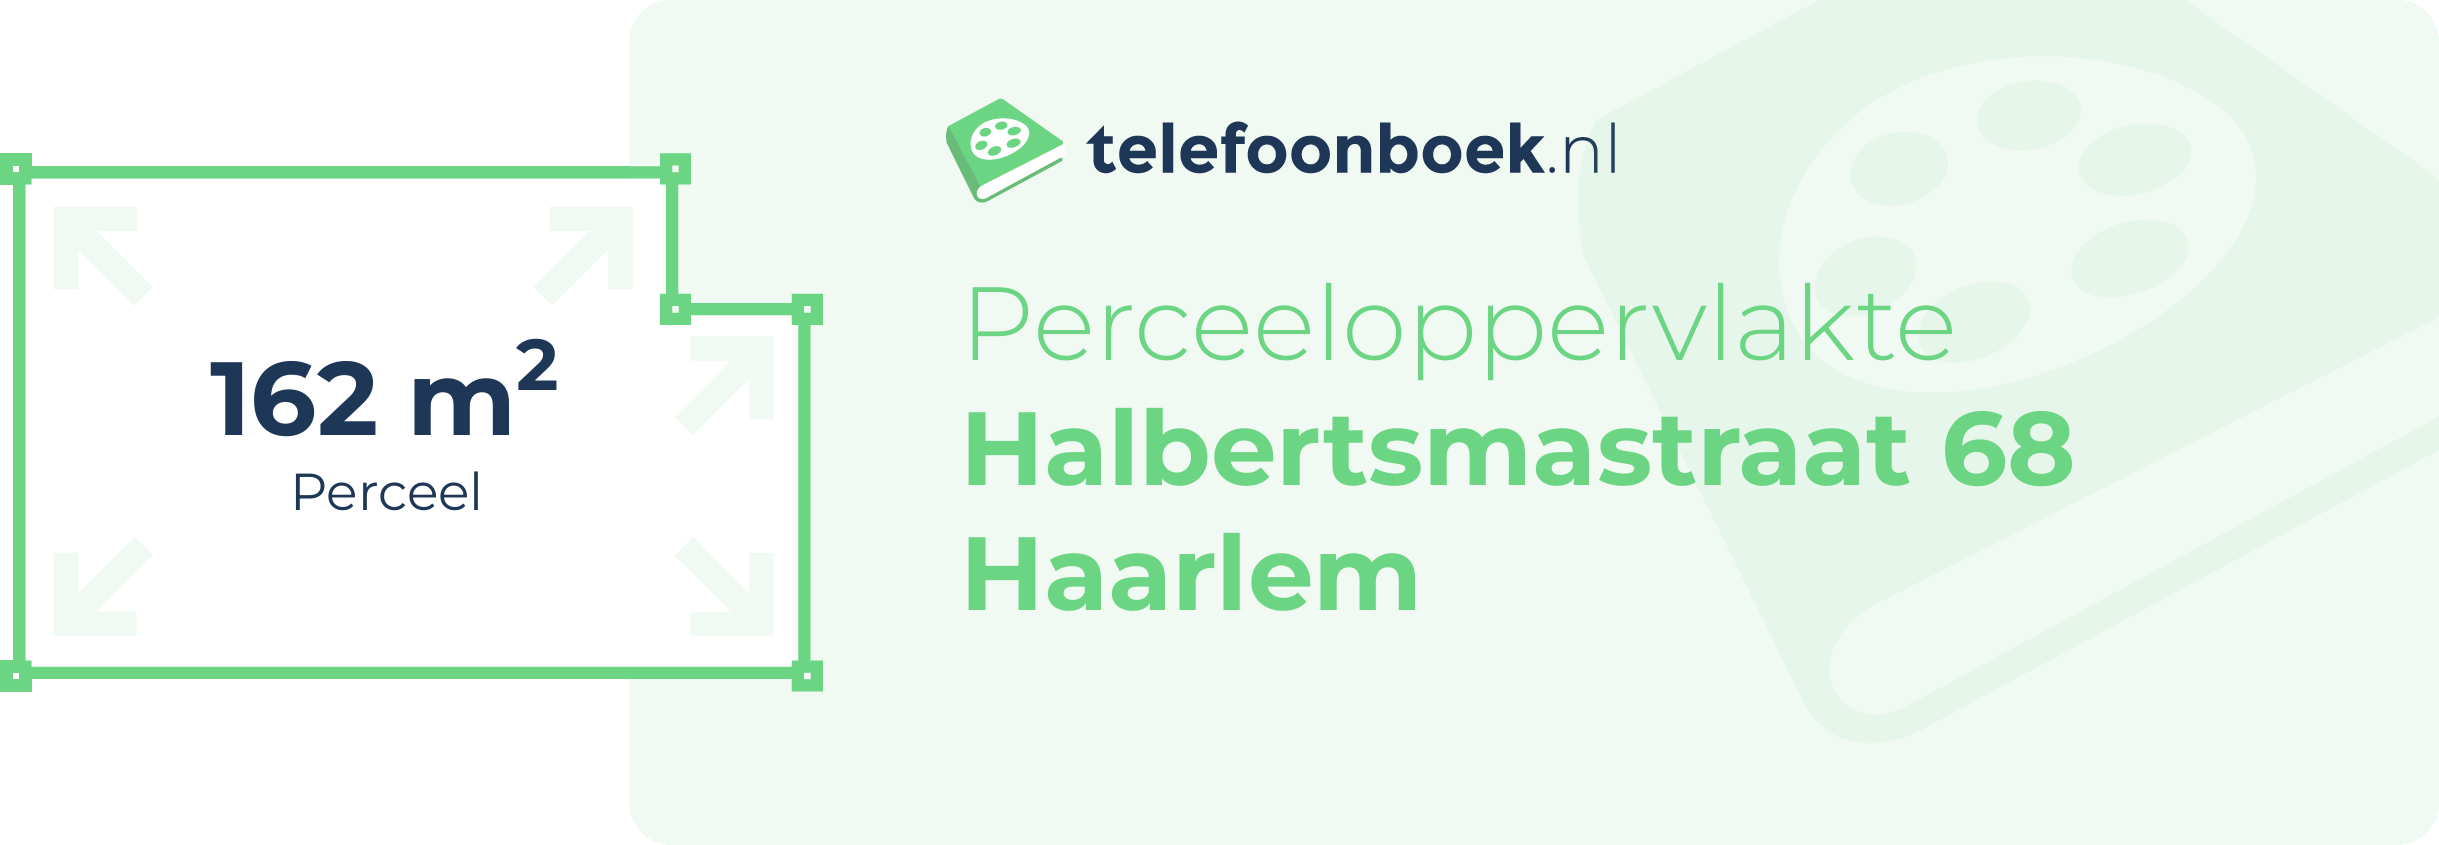 Perceeloppervlakte Halbertsmastraat 68 Haarlem